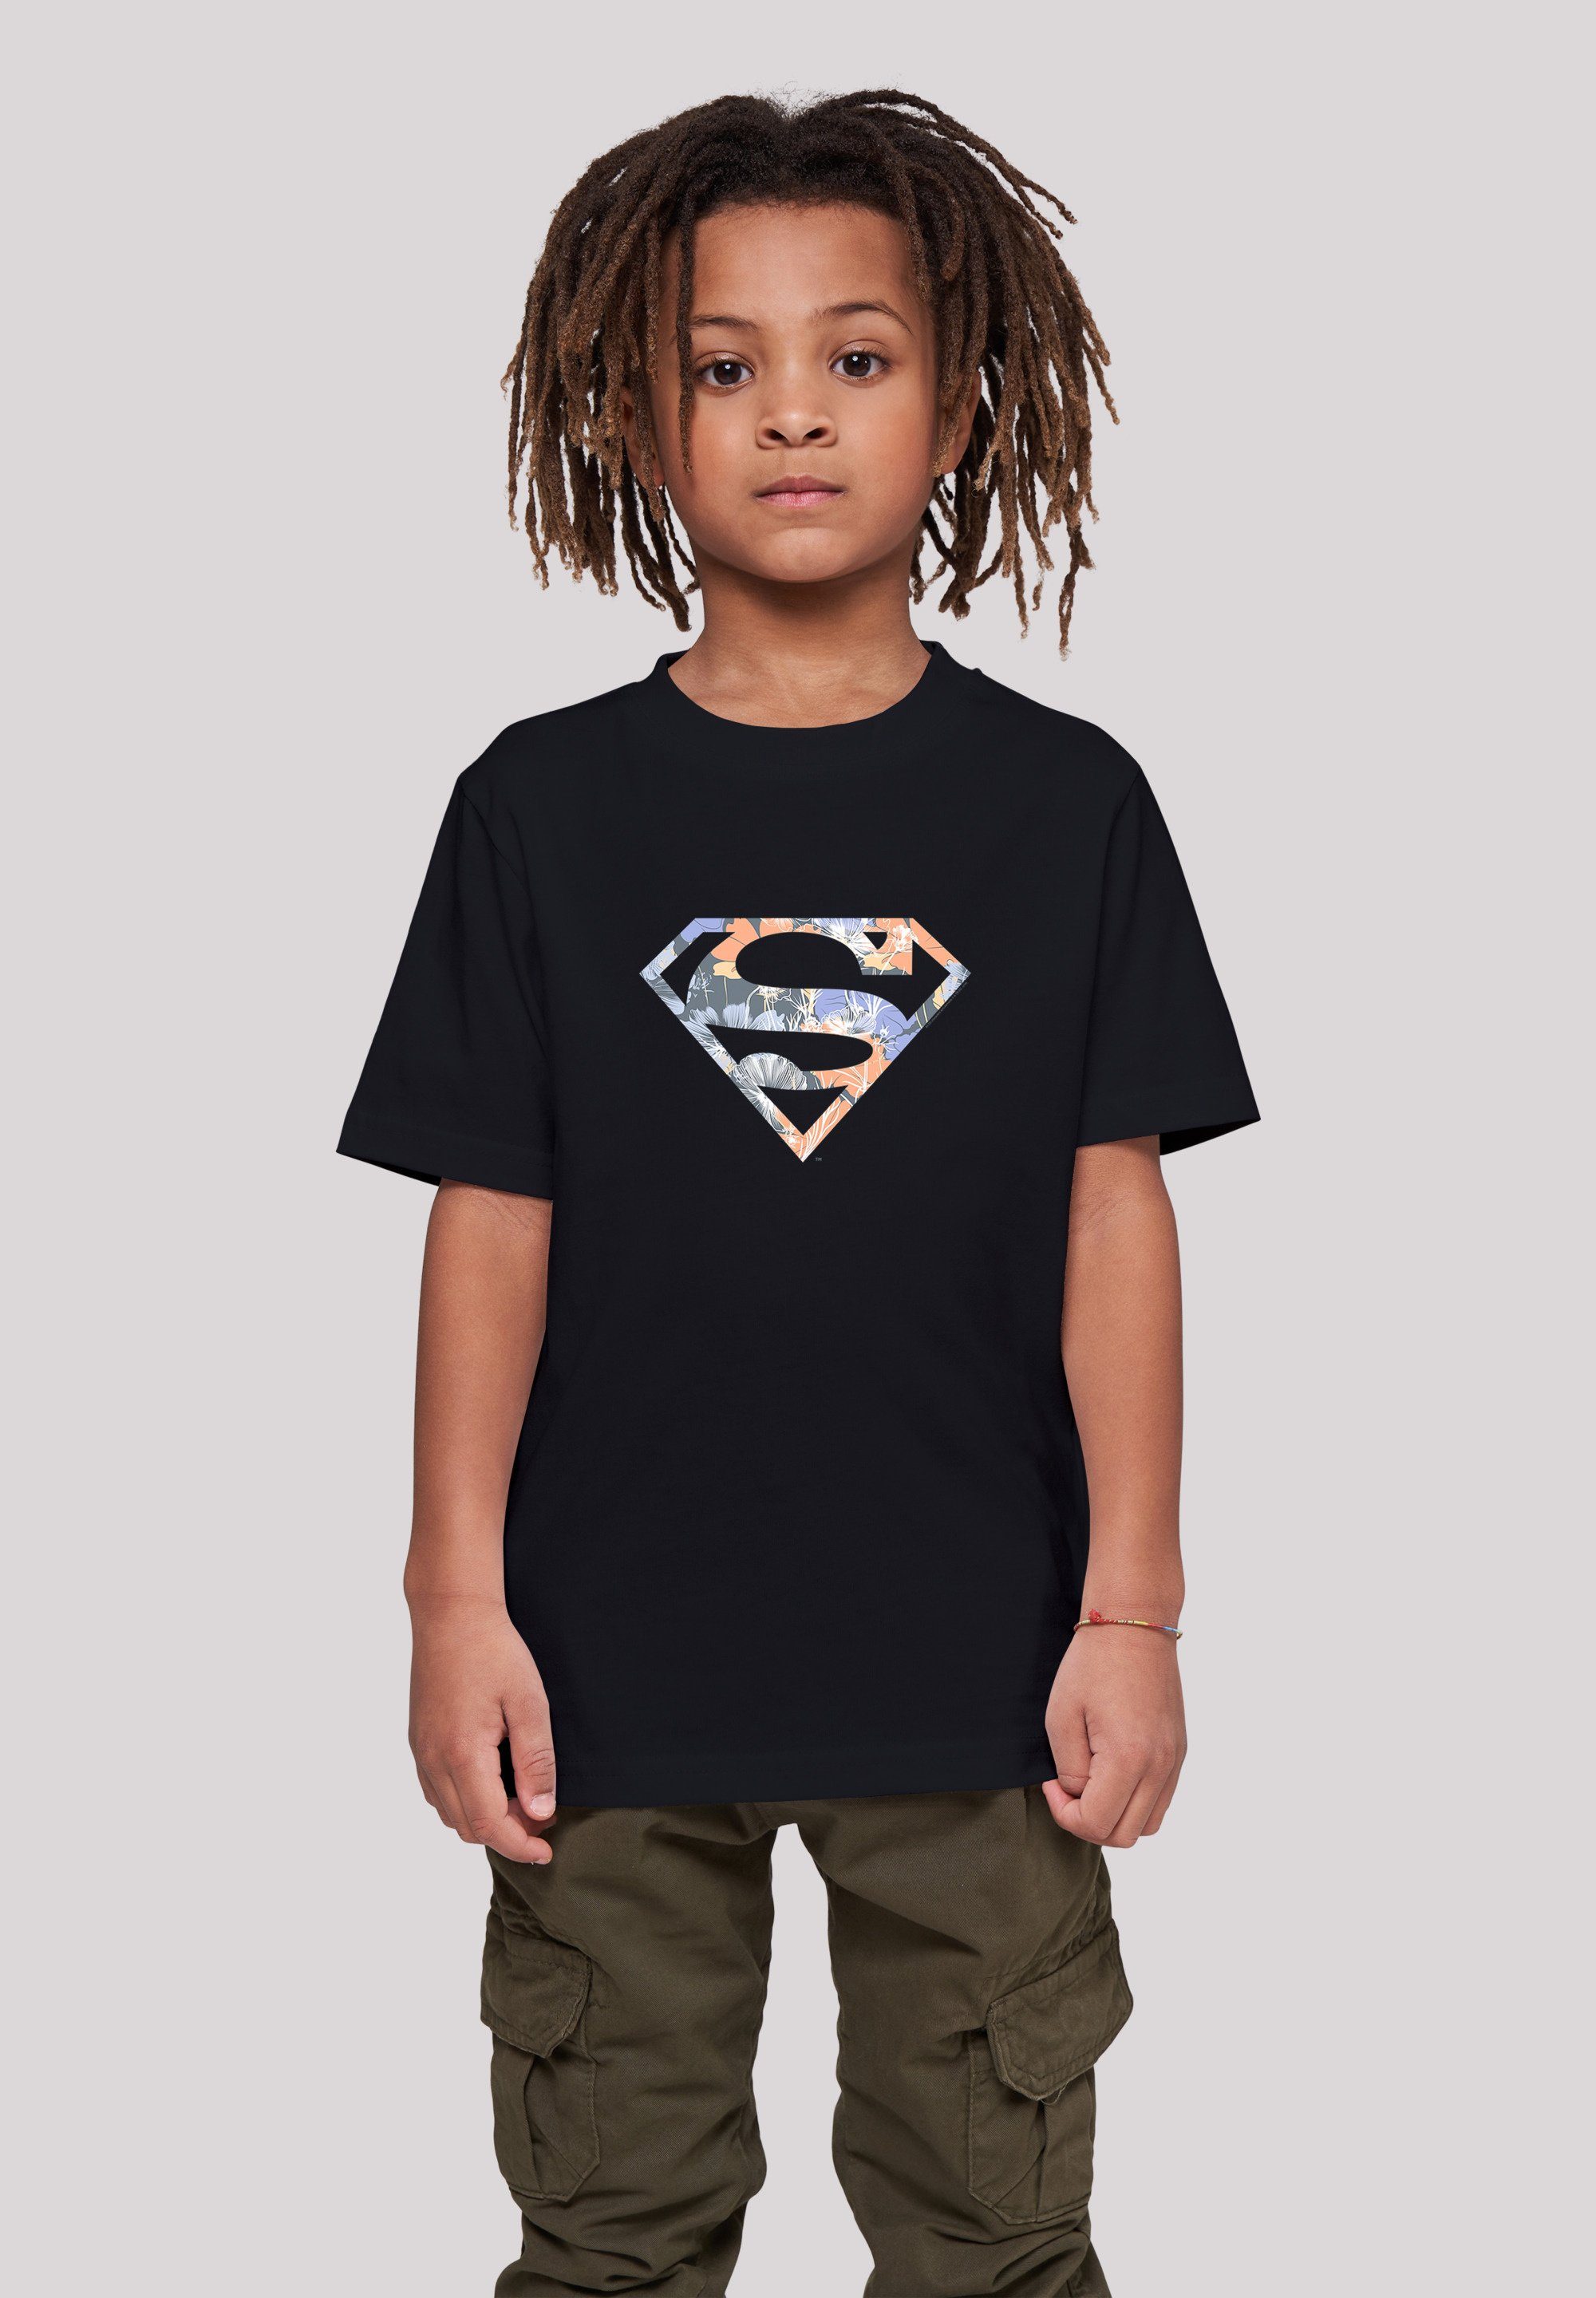 [Beliebte Verkäufe] F4NT4STIC T-Shirt T-Shirt Superman Logo DC Merch,Jungen,Mädchen,Bedruckt Superheld Floral Kinder,Premium Unisex Comics